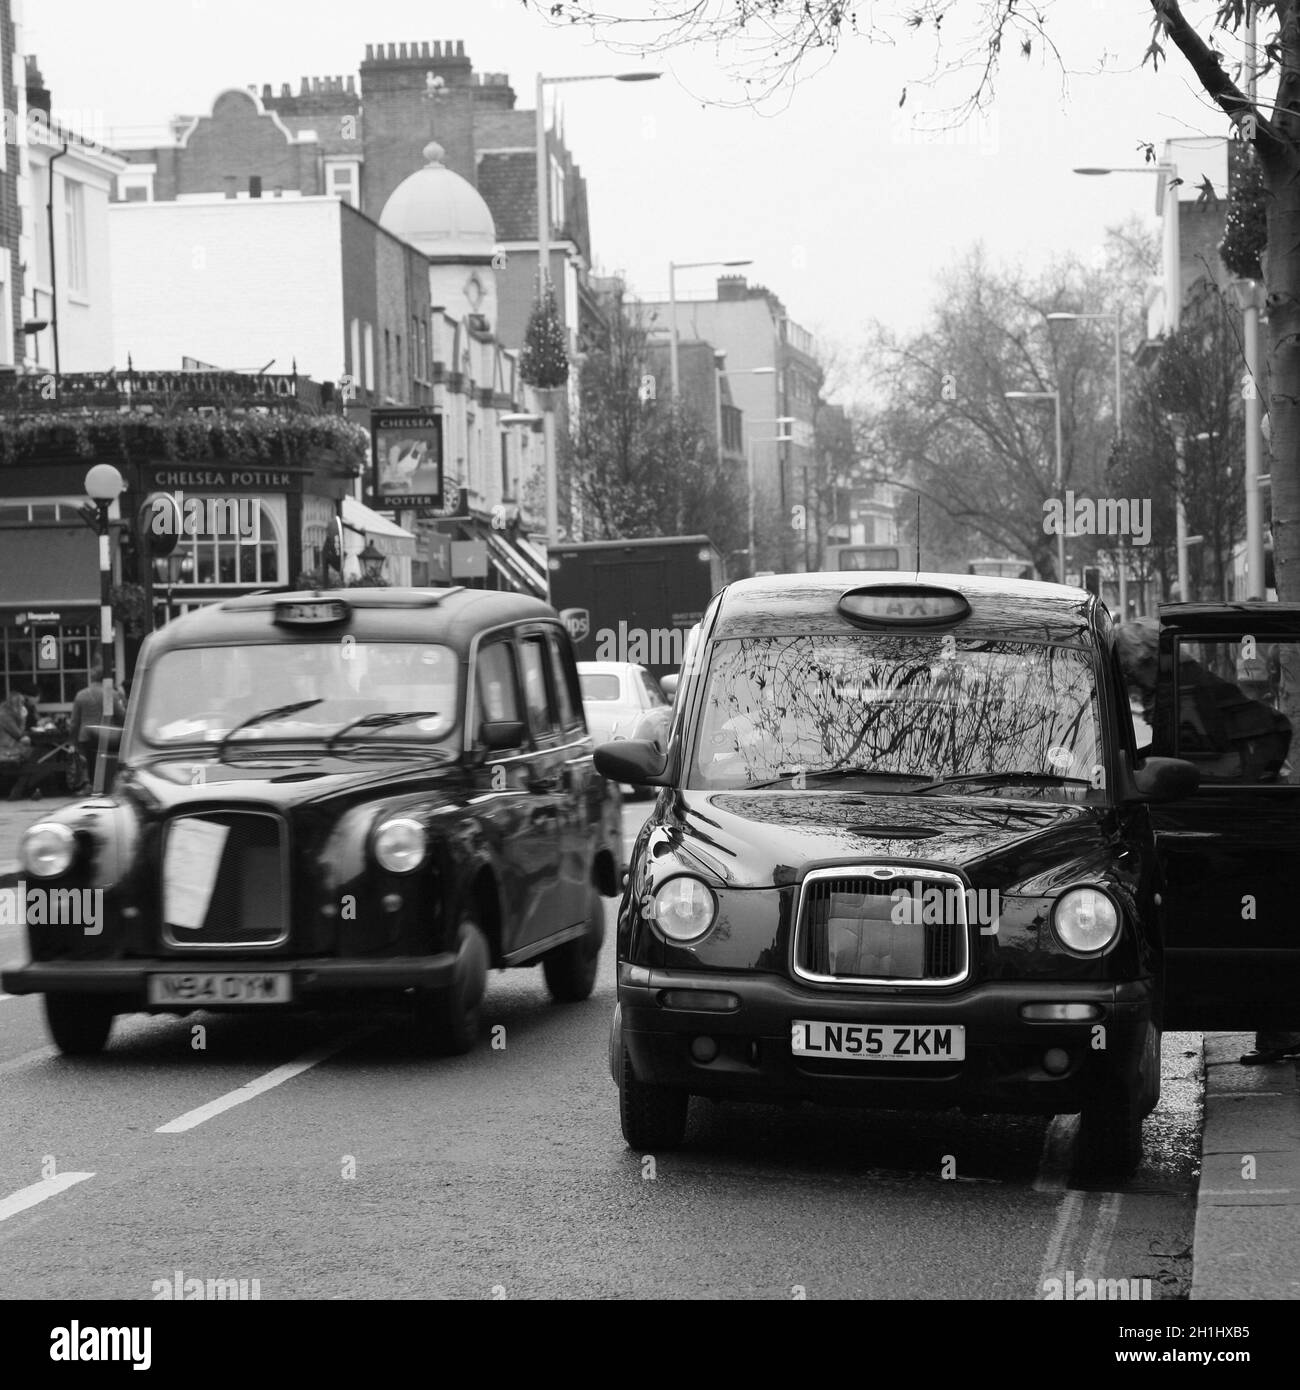 Londres, Royaume-Uni - 29 octobre 2010 : taxi dans la rue de Londres. Les taxis sont le symbole le plus emblématique de Londres ainsi que le bus à impériale rouge de Londres. Banque D'Images